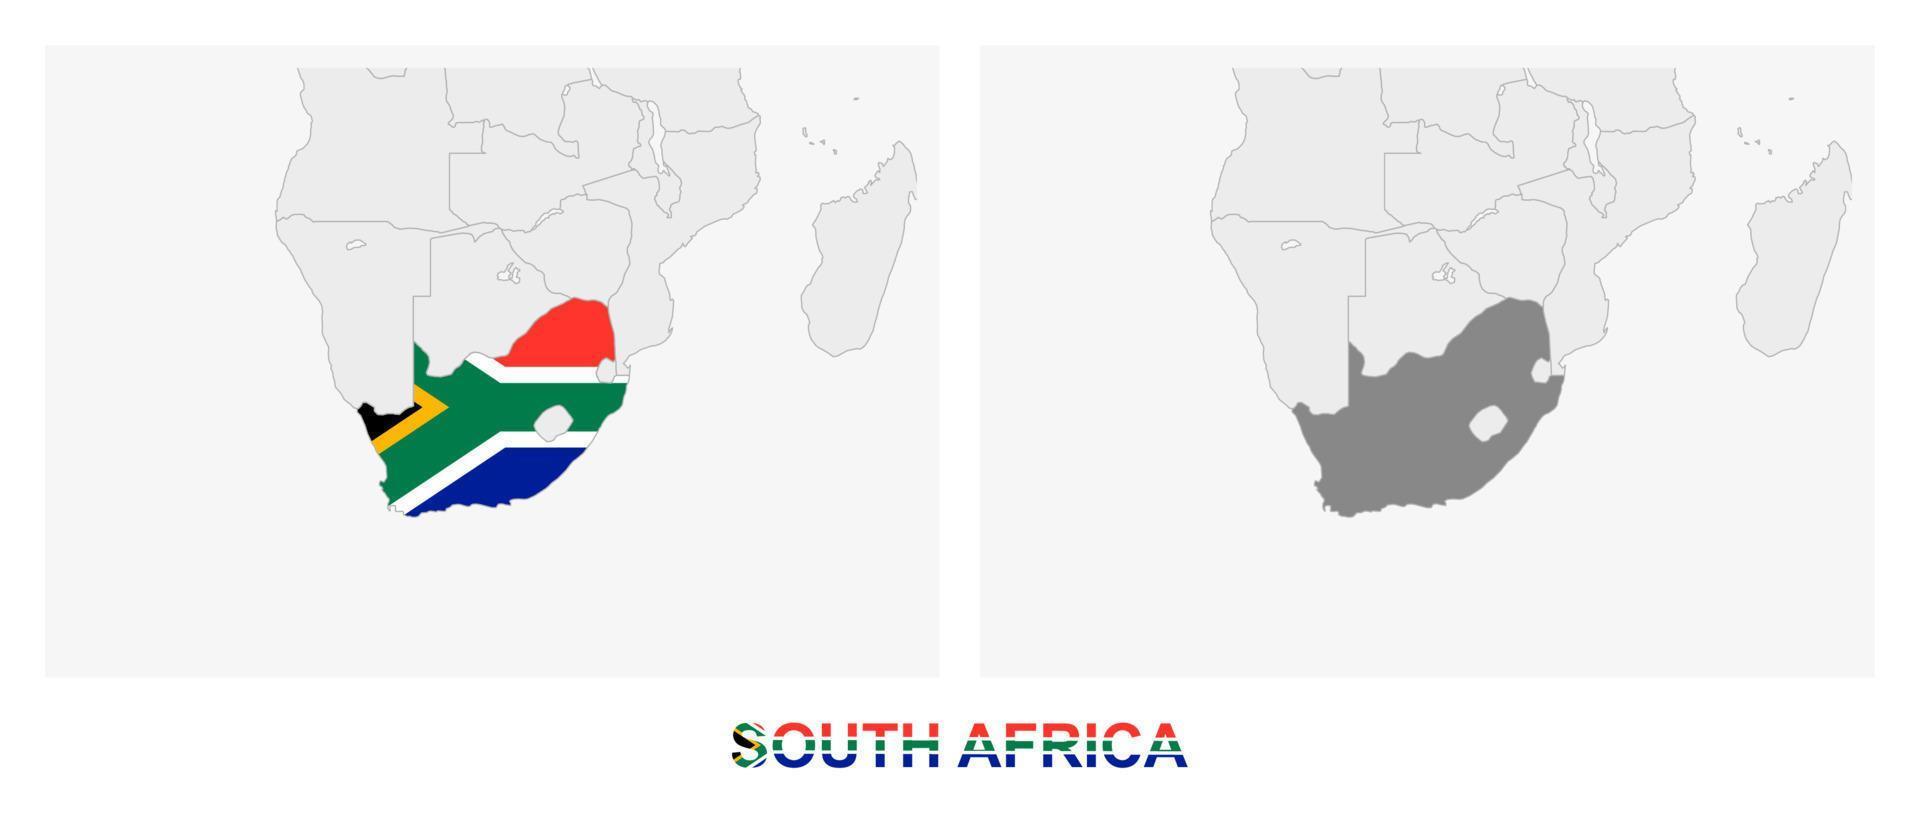 dos versiones del mapa de sudáfrica, con la bandera de sudáfrica y resaltada en gris oscuro. vector